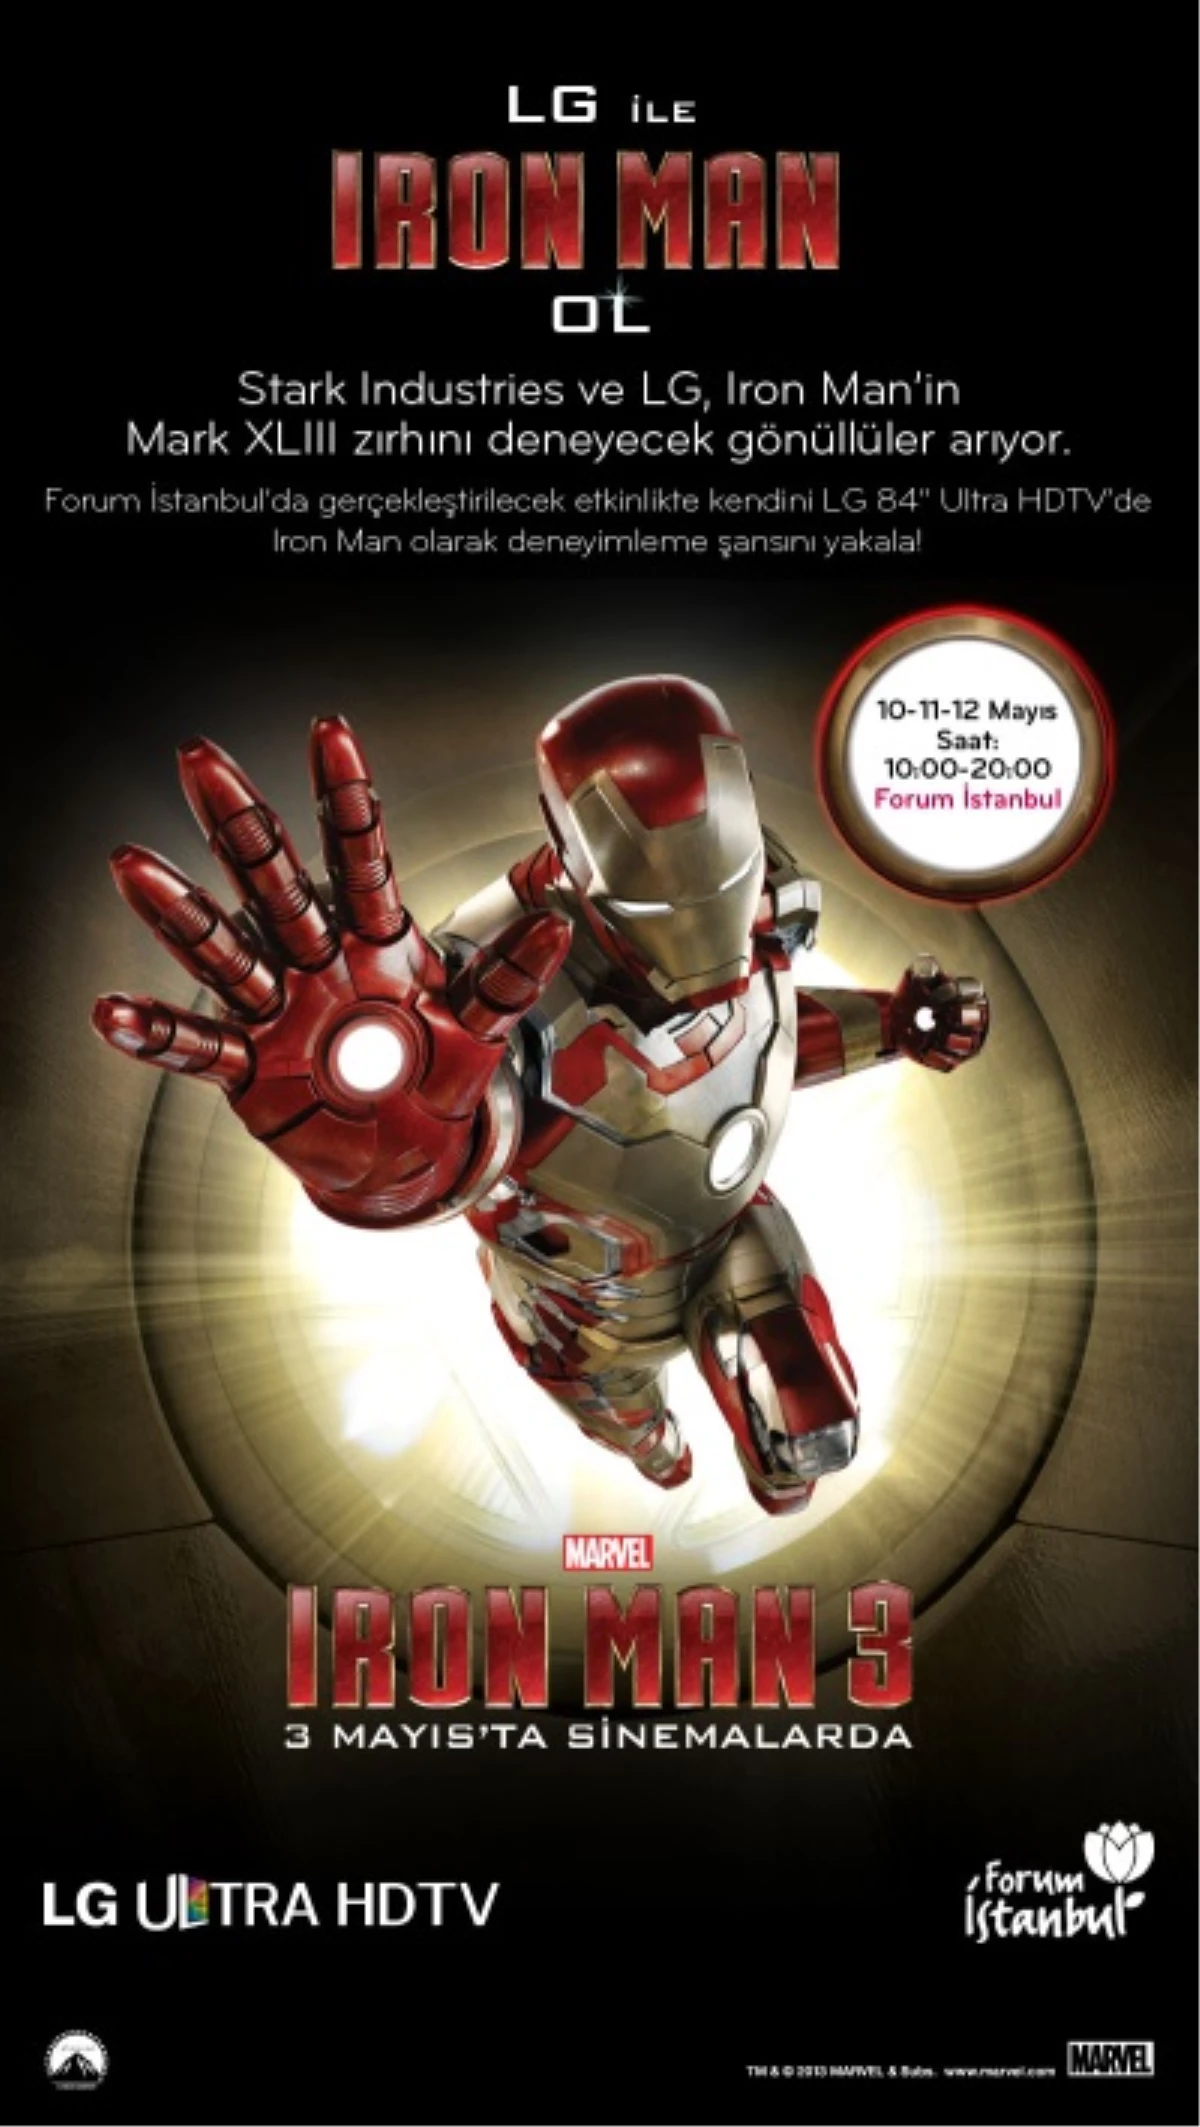 "LG ile Iron Man Ol" deneyimi bu haftasonu Forum İstanbul\'da!